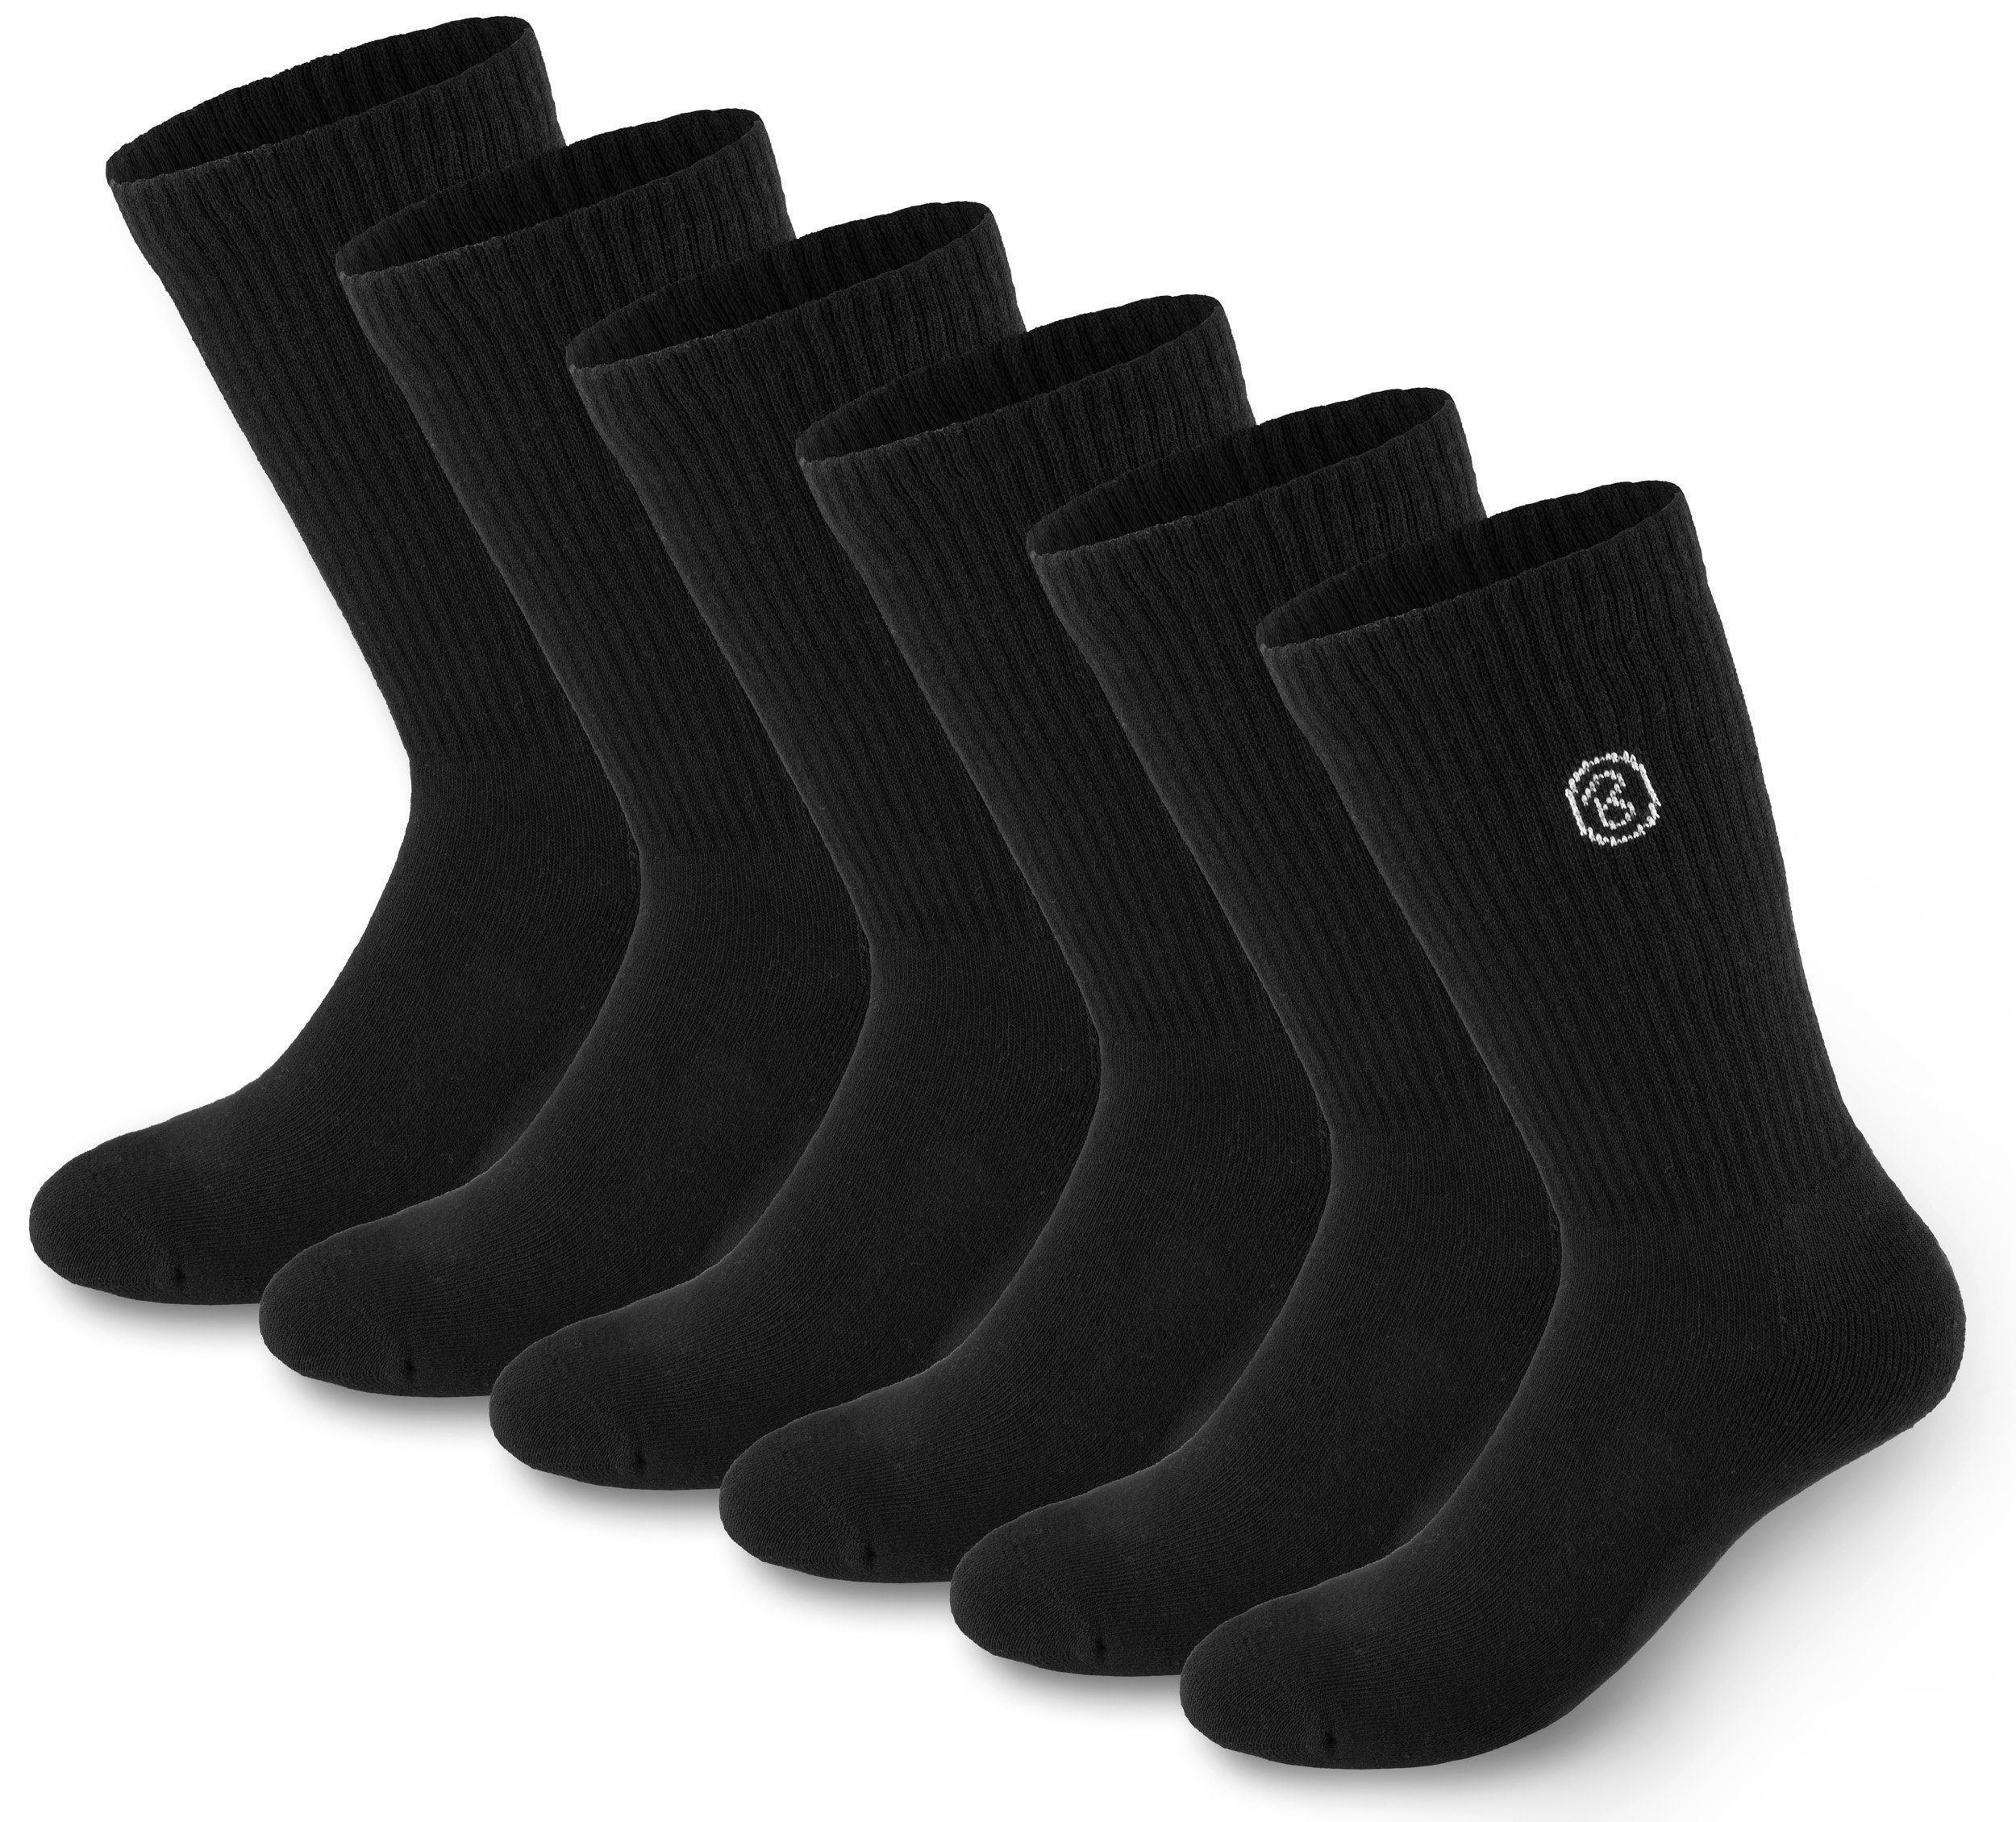 BRUBAKER Tennissocken Lange Sportsocken für Herren und Damen (Set, 6 Paar) Unisex Fitness Socken aus Baumwolle und Polyester - Crew Socks - Baumwollsocken